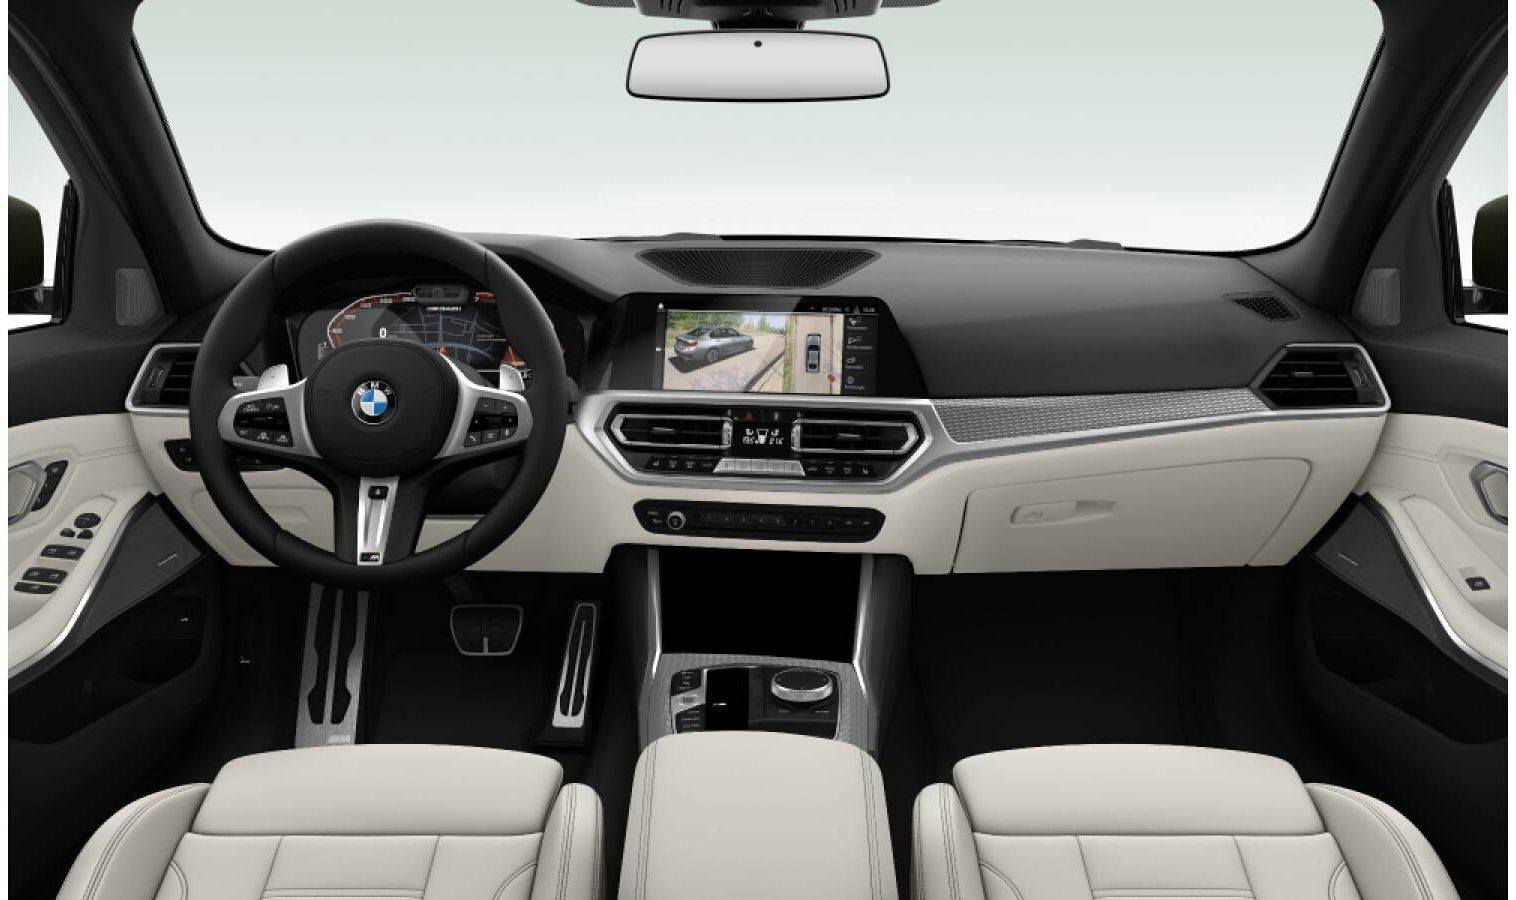 2019 BMW 3 Series G20 - Interior